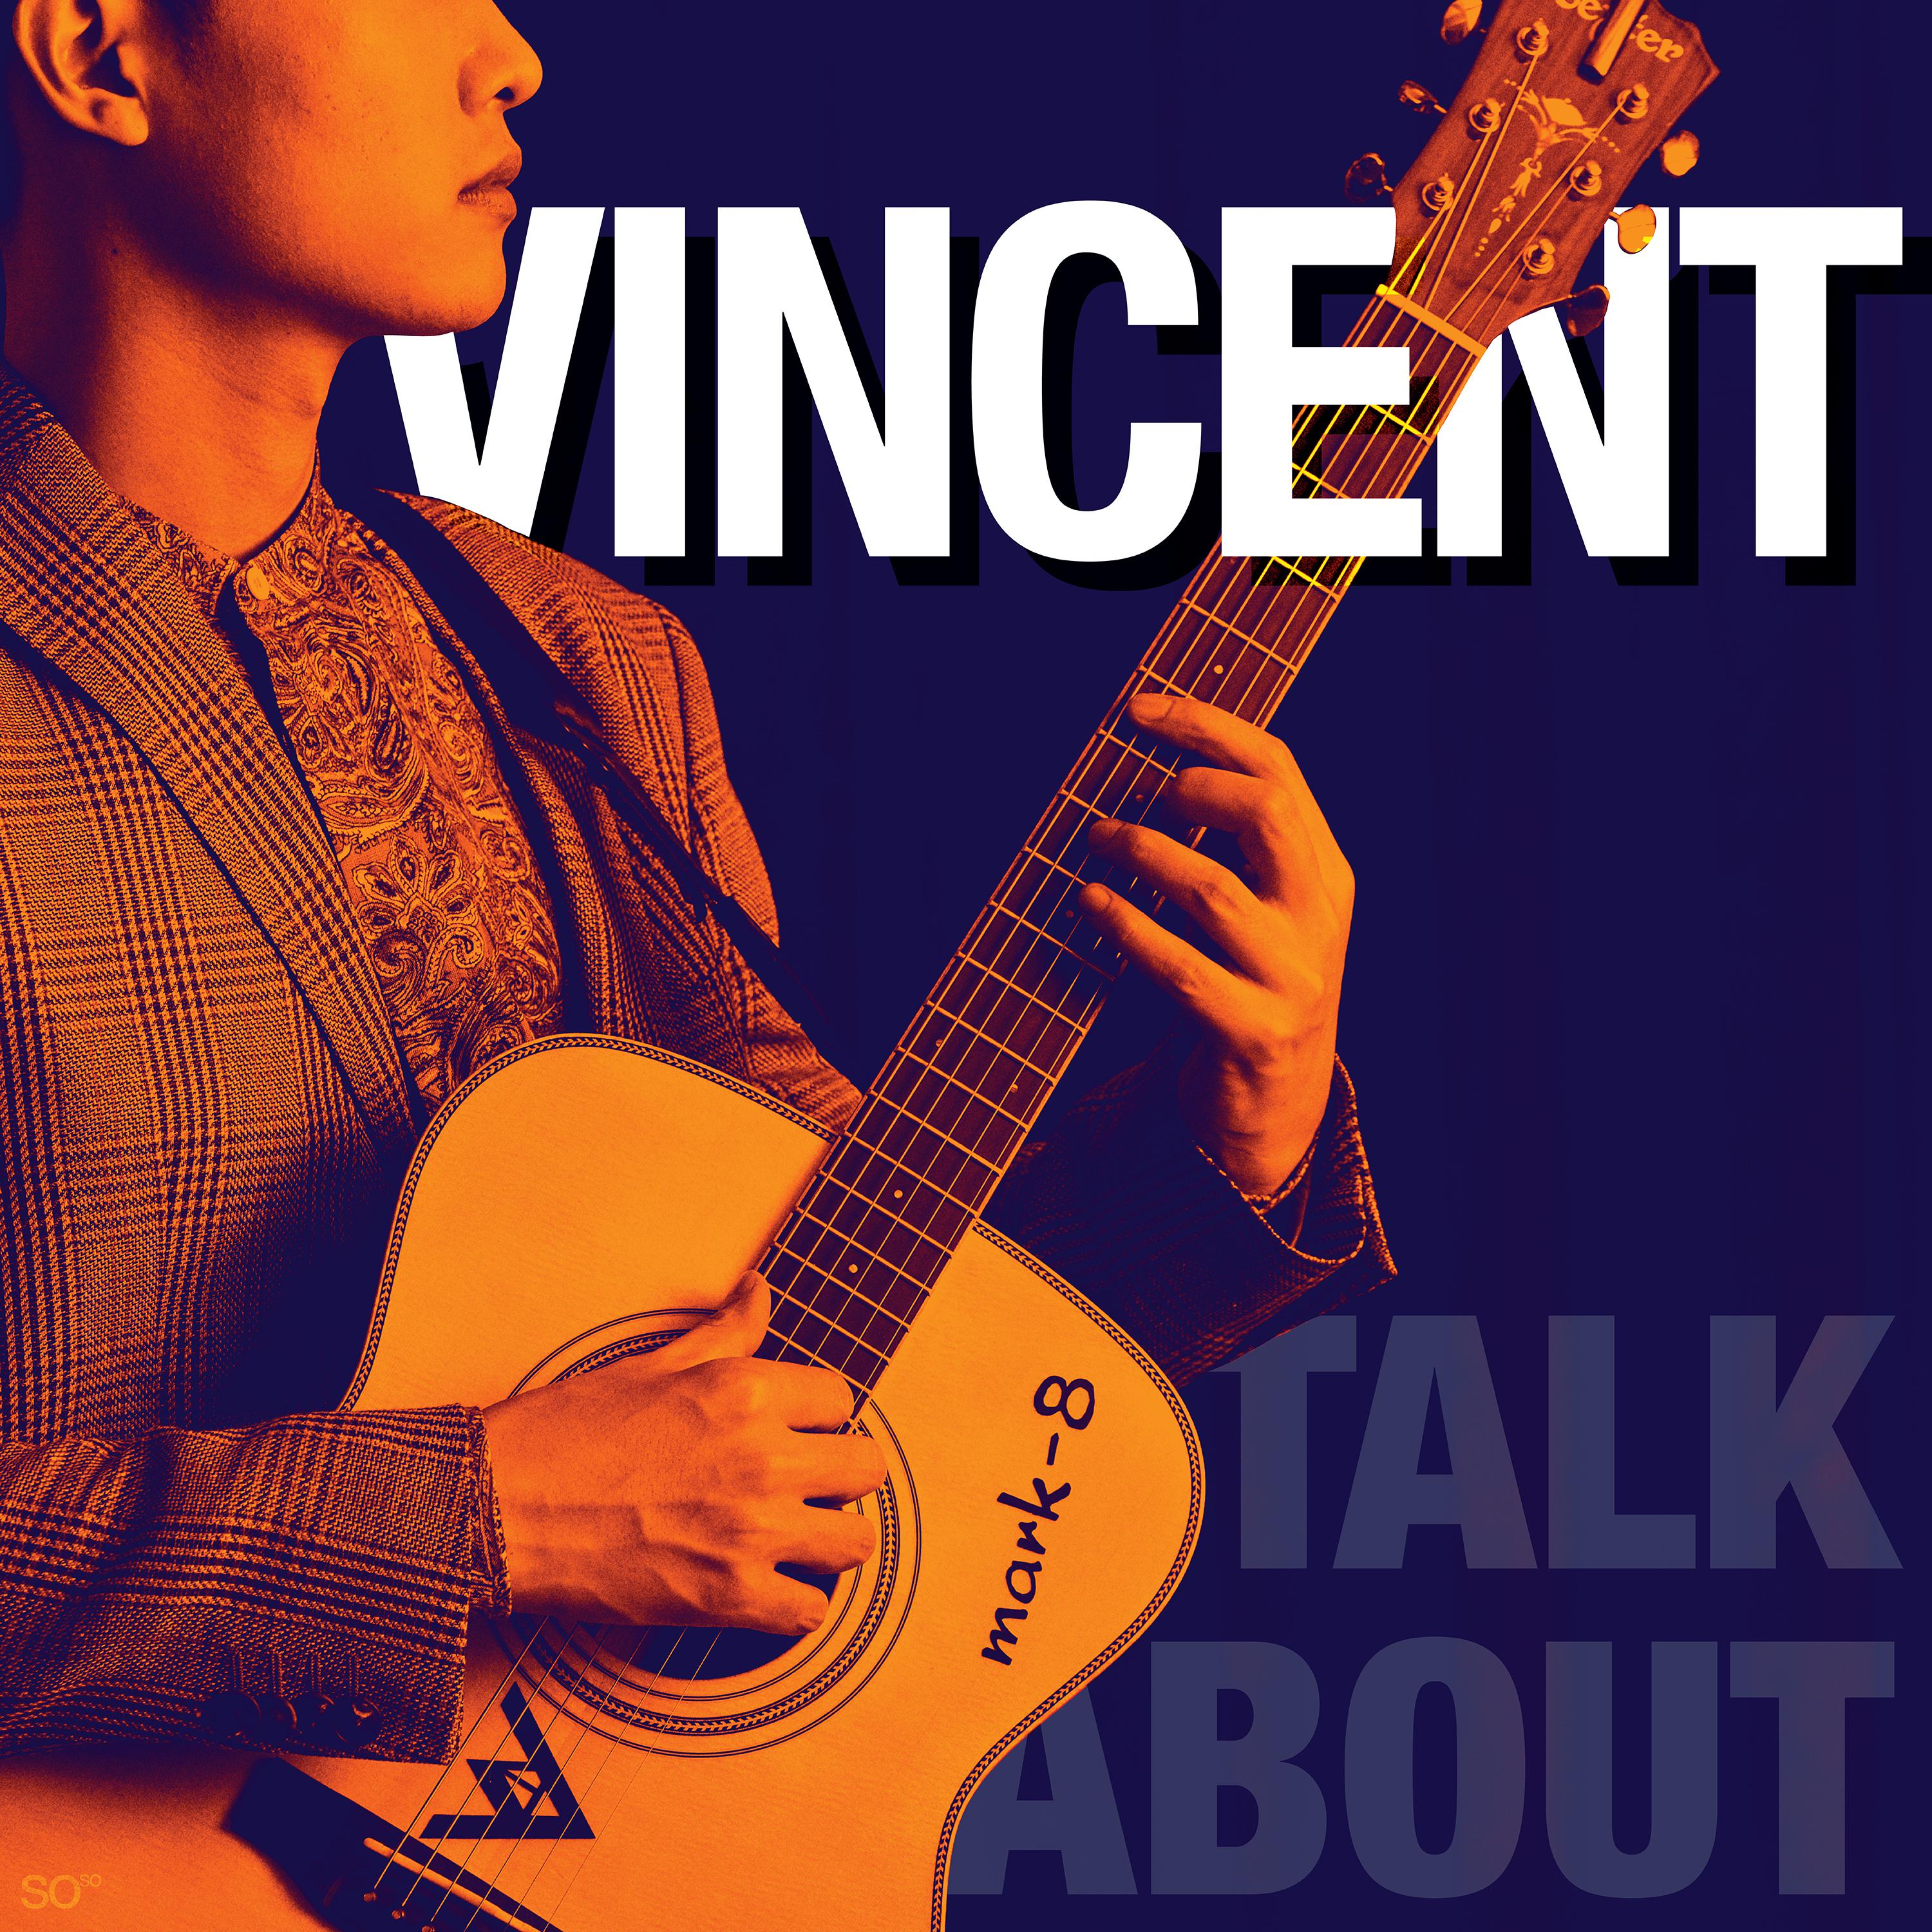 Vincent - Talk about